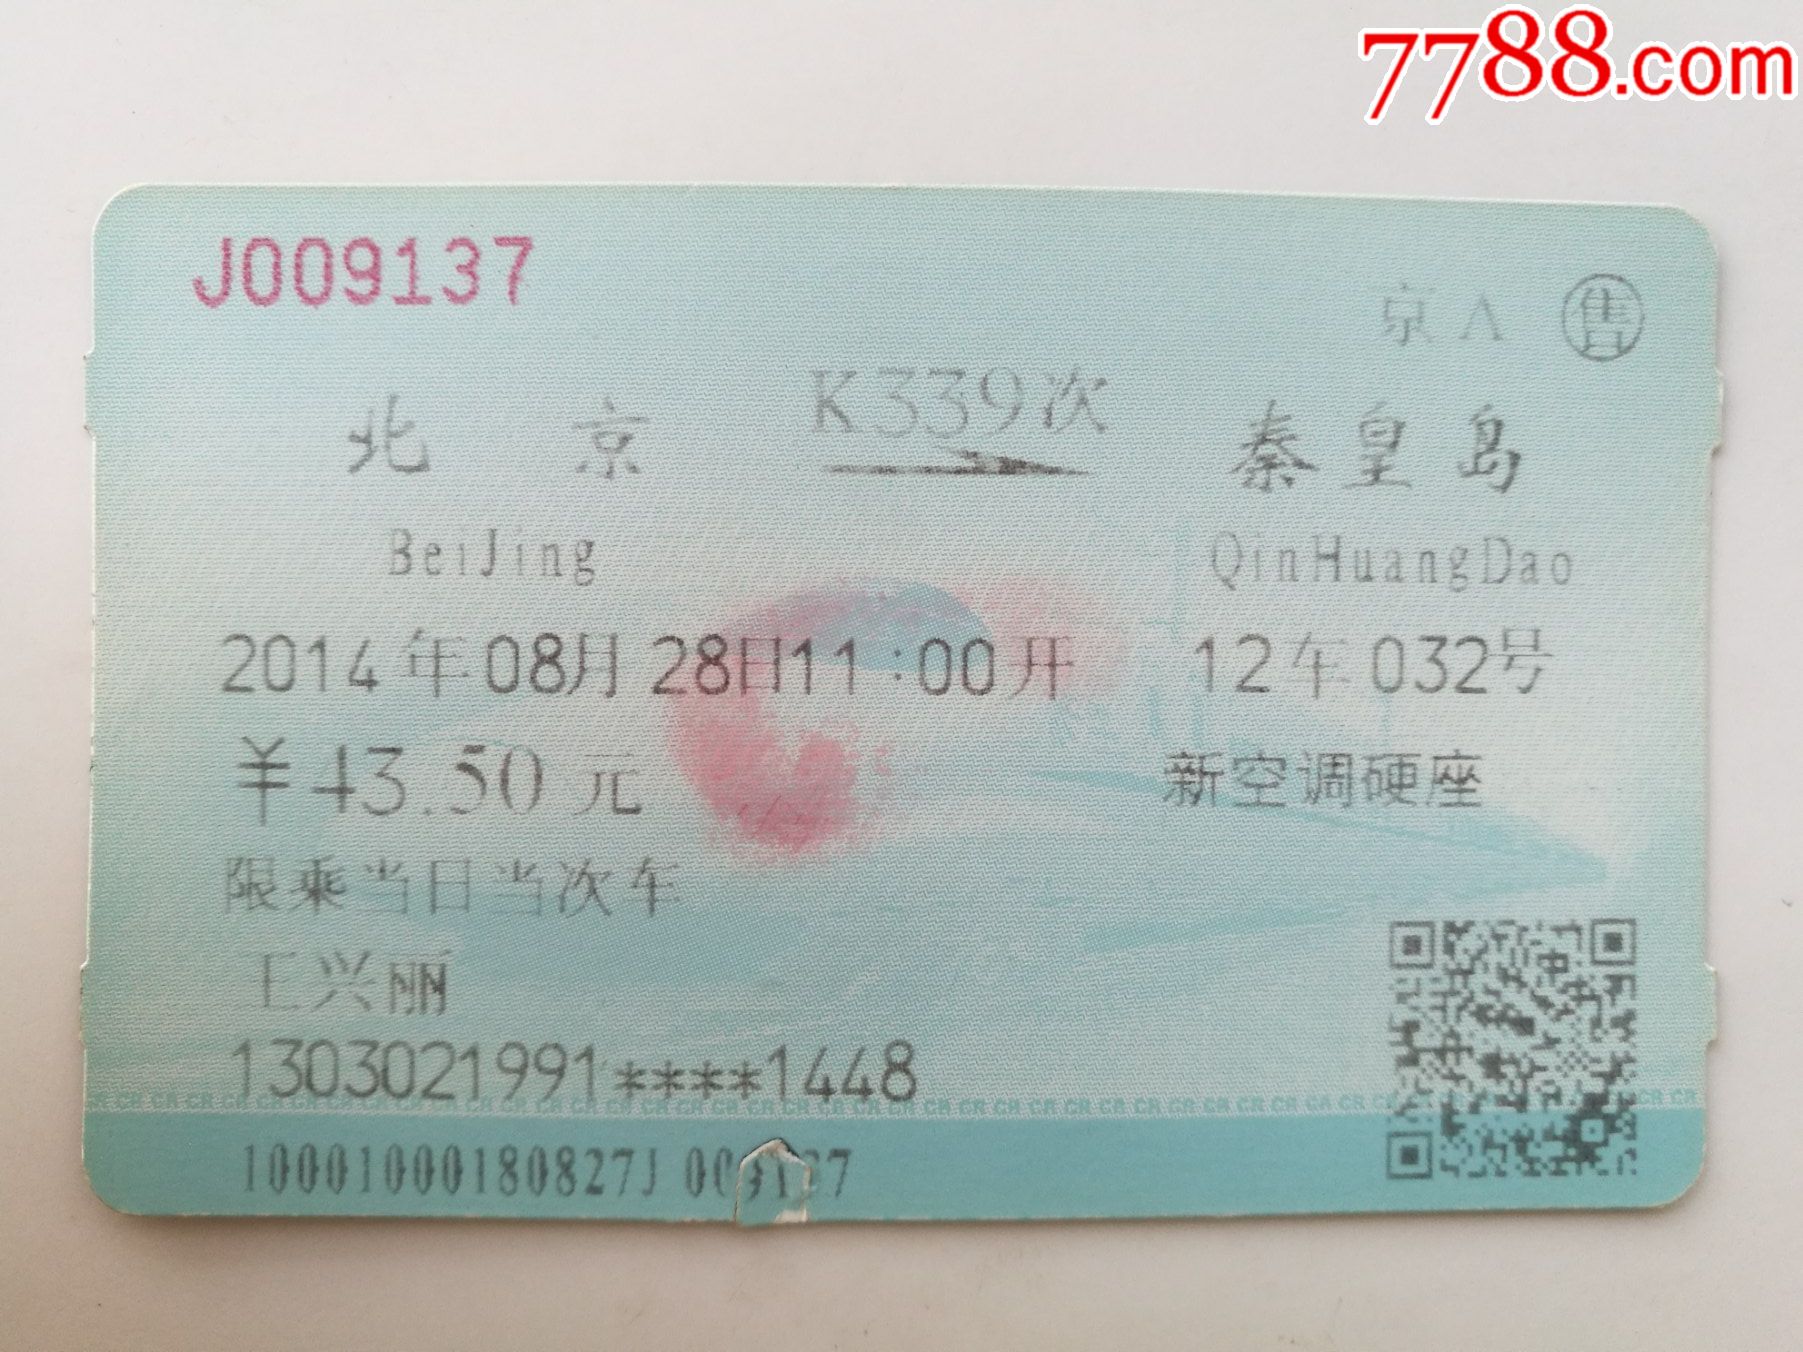 模拟K339次列车（北京-佳木斯），全程1797公里，运行24小时23分_哔哩哔哩 (゜-゜)つロ 干杯~-bilibili